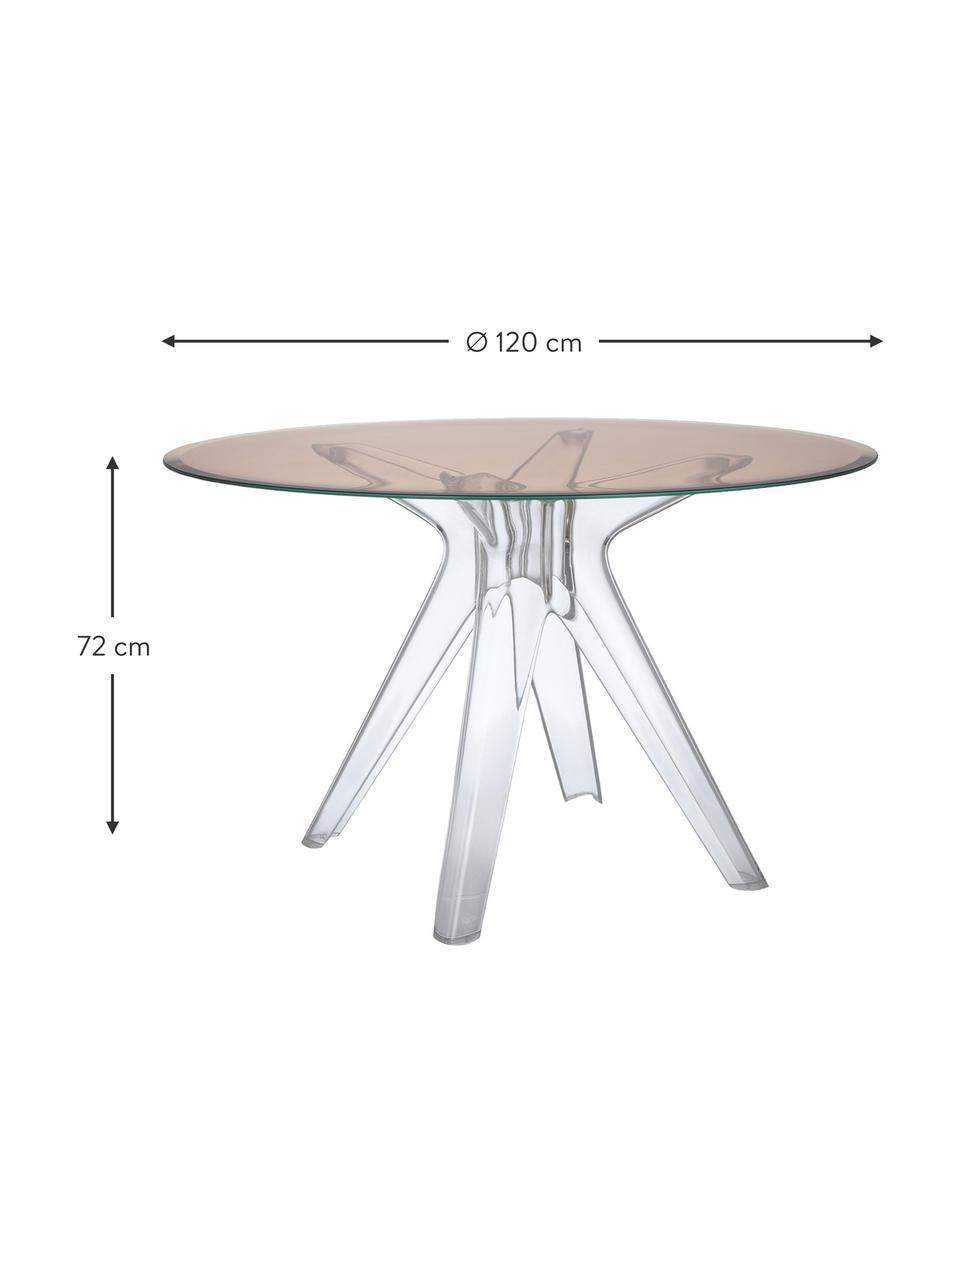 Runder Esstisch Sir Gio, Ø 120 cm, Tischplatte: Verbundglas, Gestell: Kunststoff, Braun, Transparent, Ø 120 cm